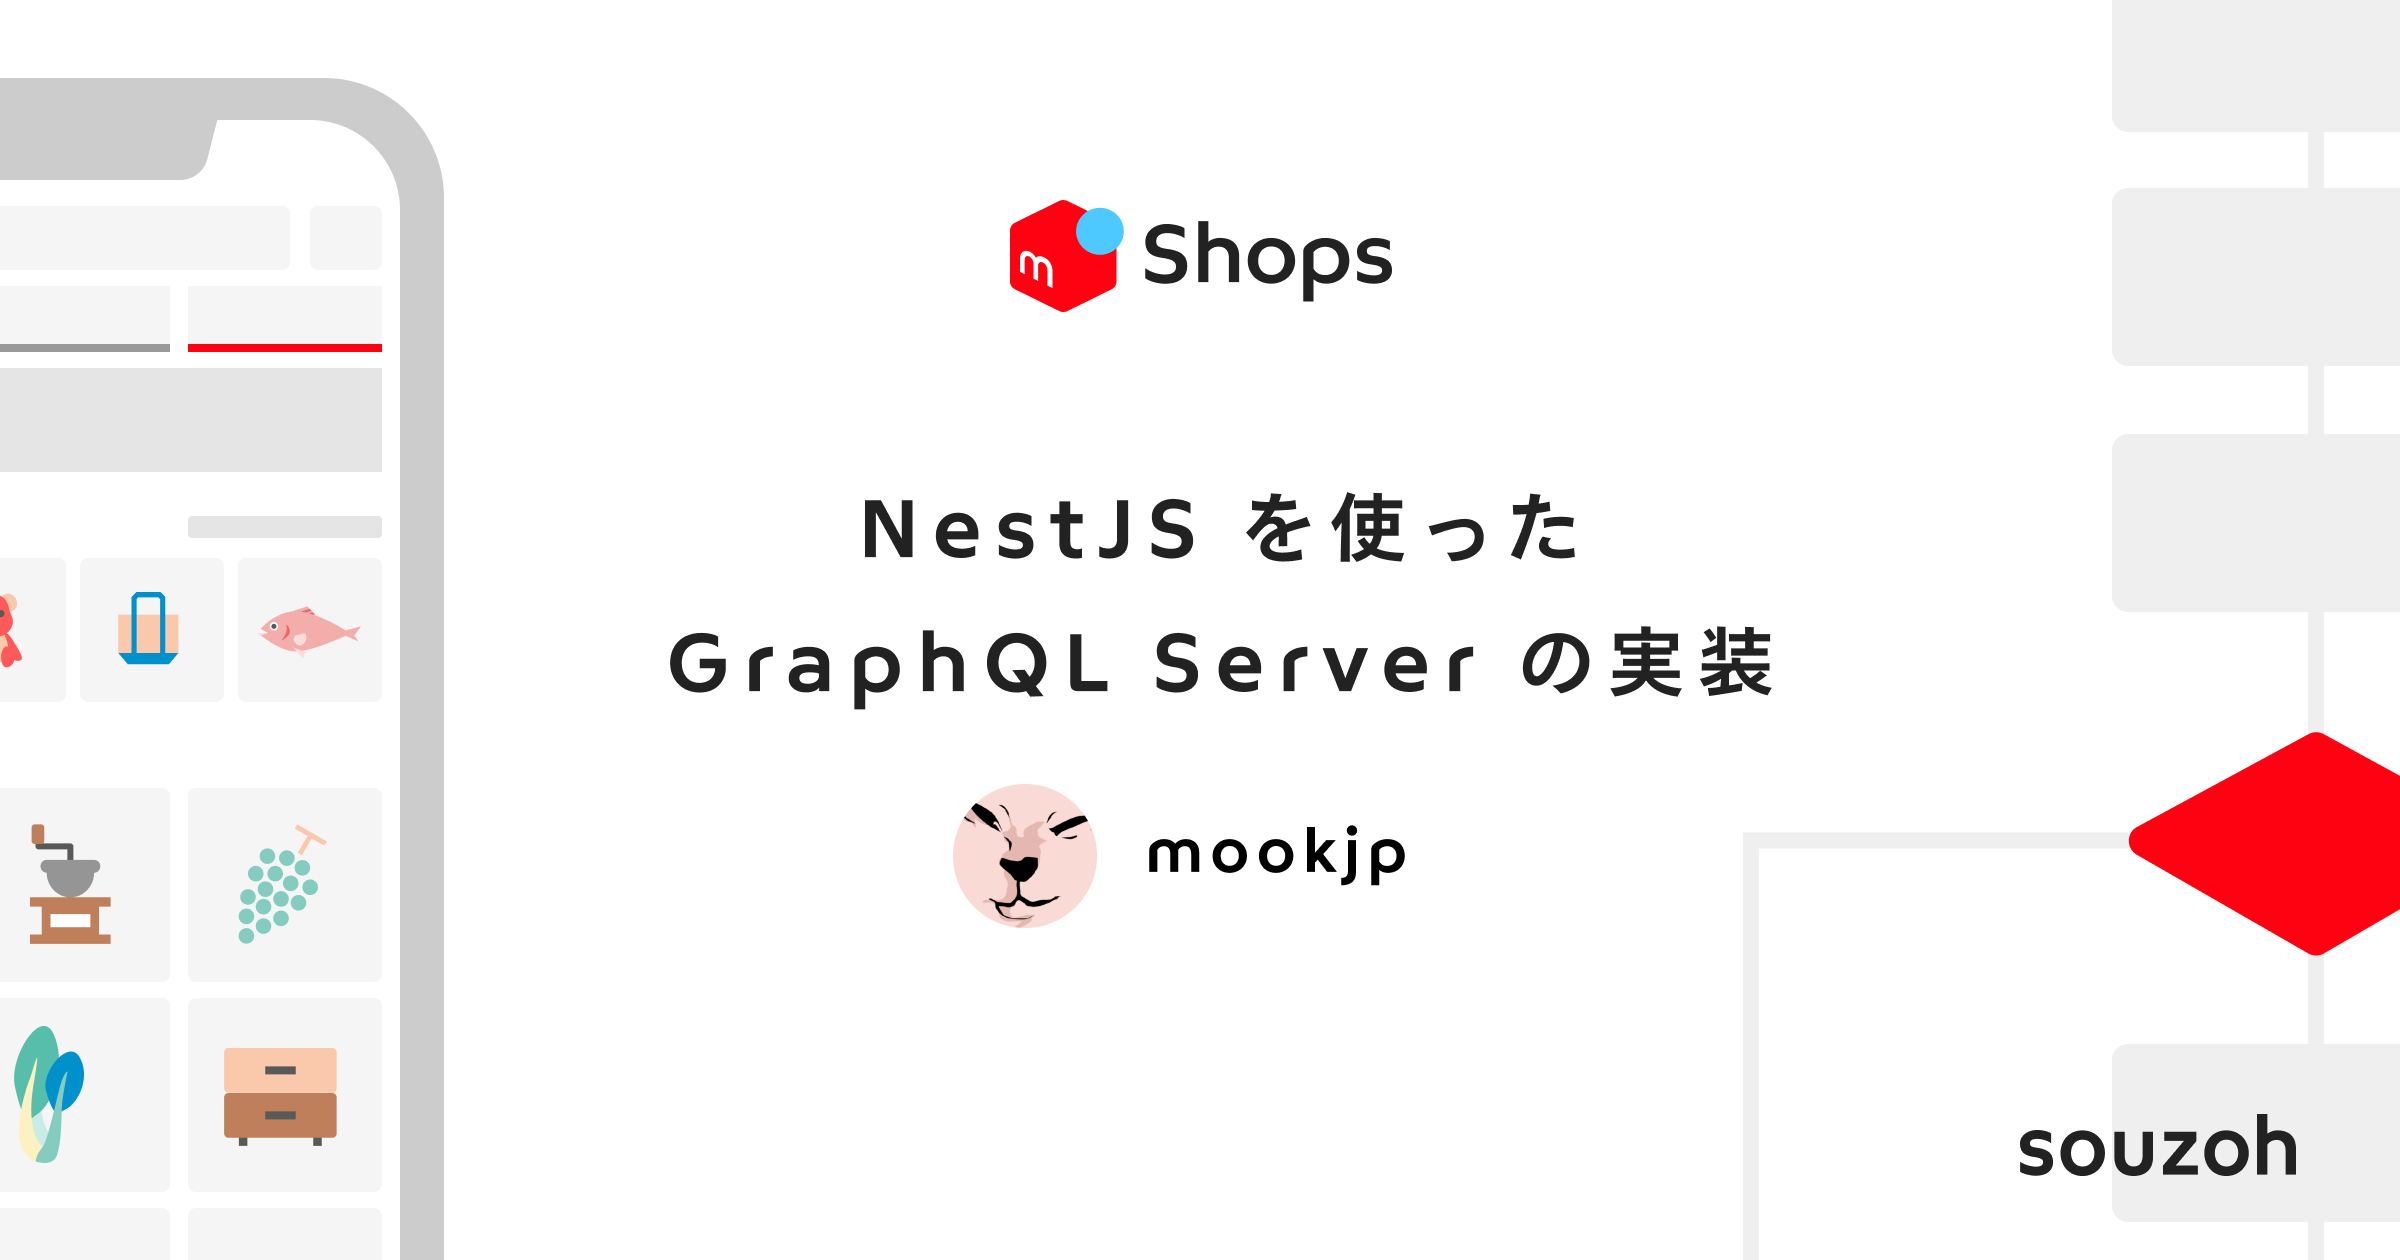 メルカリ Shops での NestJS を使った GraphQL Server の実装